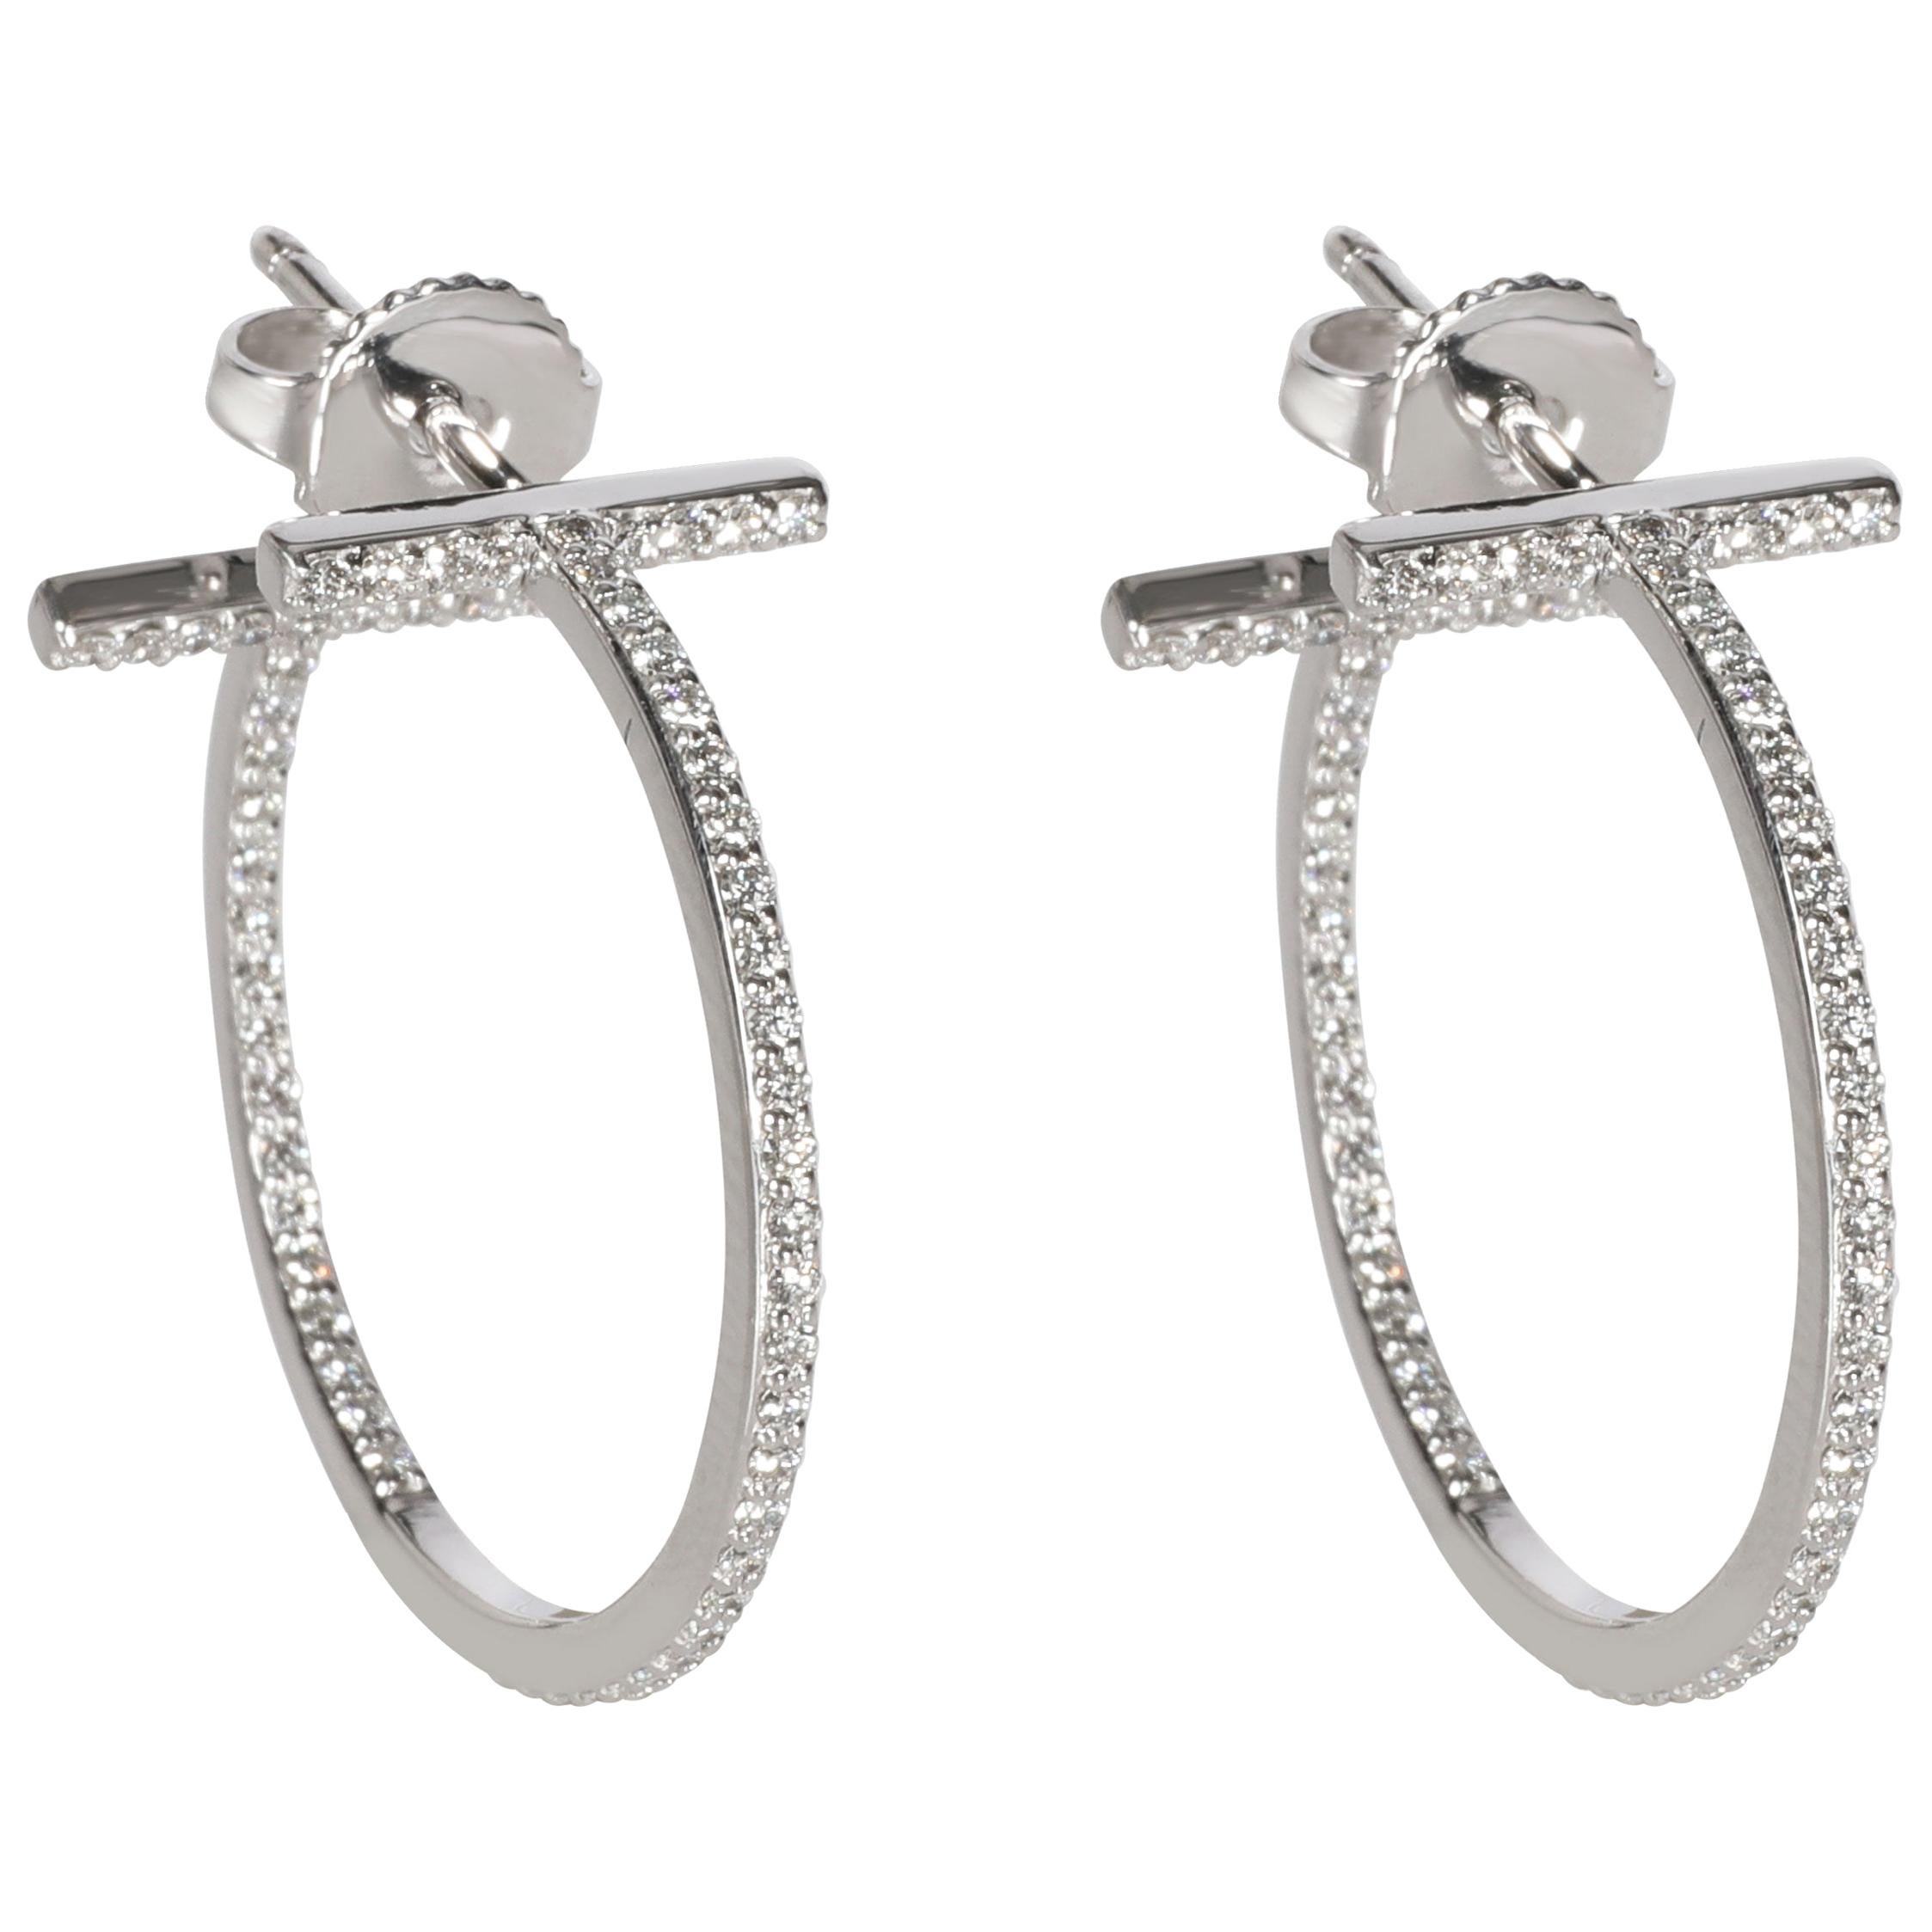 Tiffany & Co. T Diamond Hoop Earrings in 18 Karat White Gold 0.41 Carat